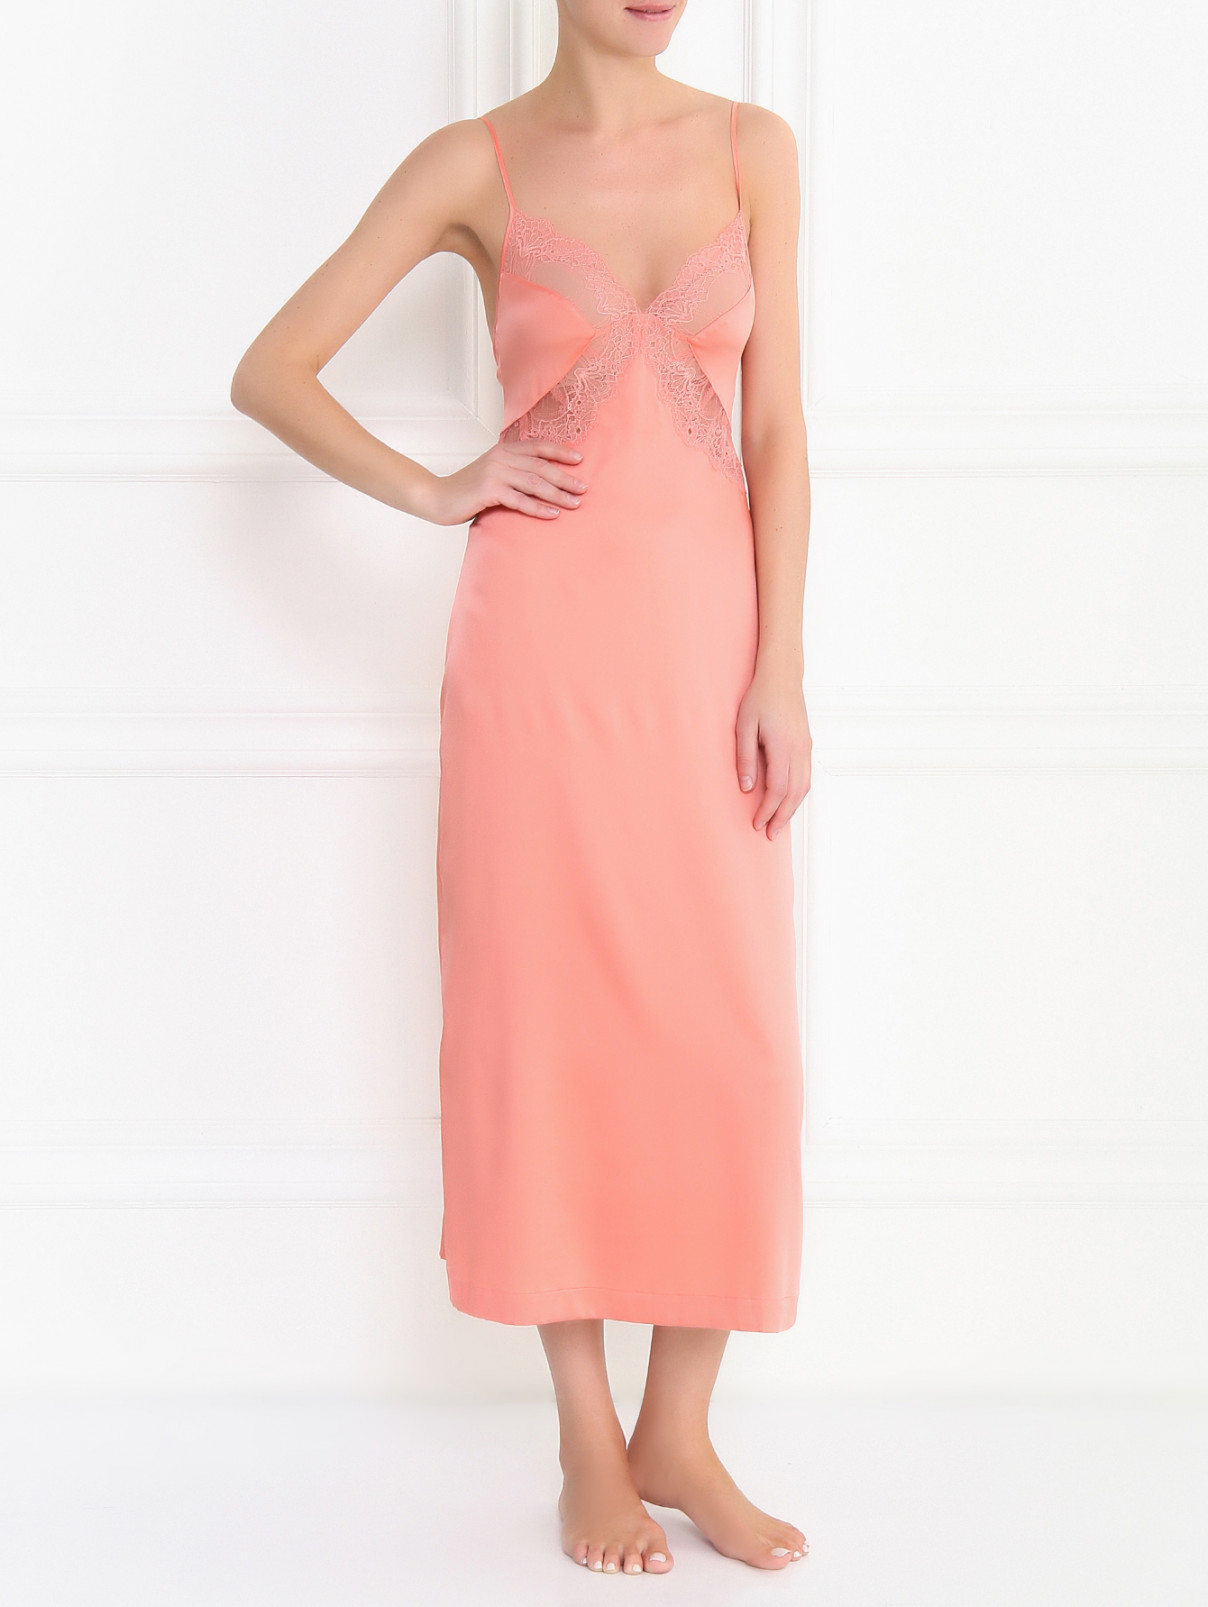 Сорочка-макси декорированная кружевом La Perla  –  Модель Общий вид  – Цвет:  Розовый